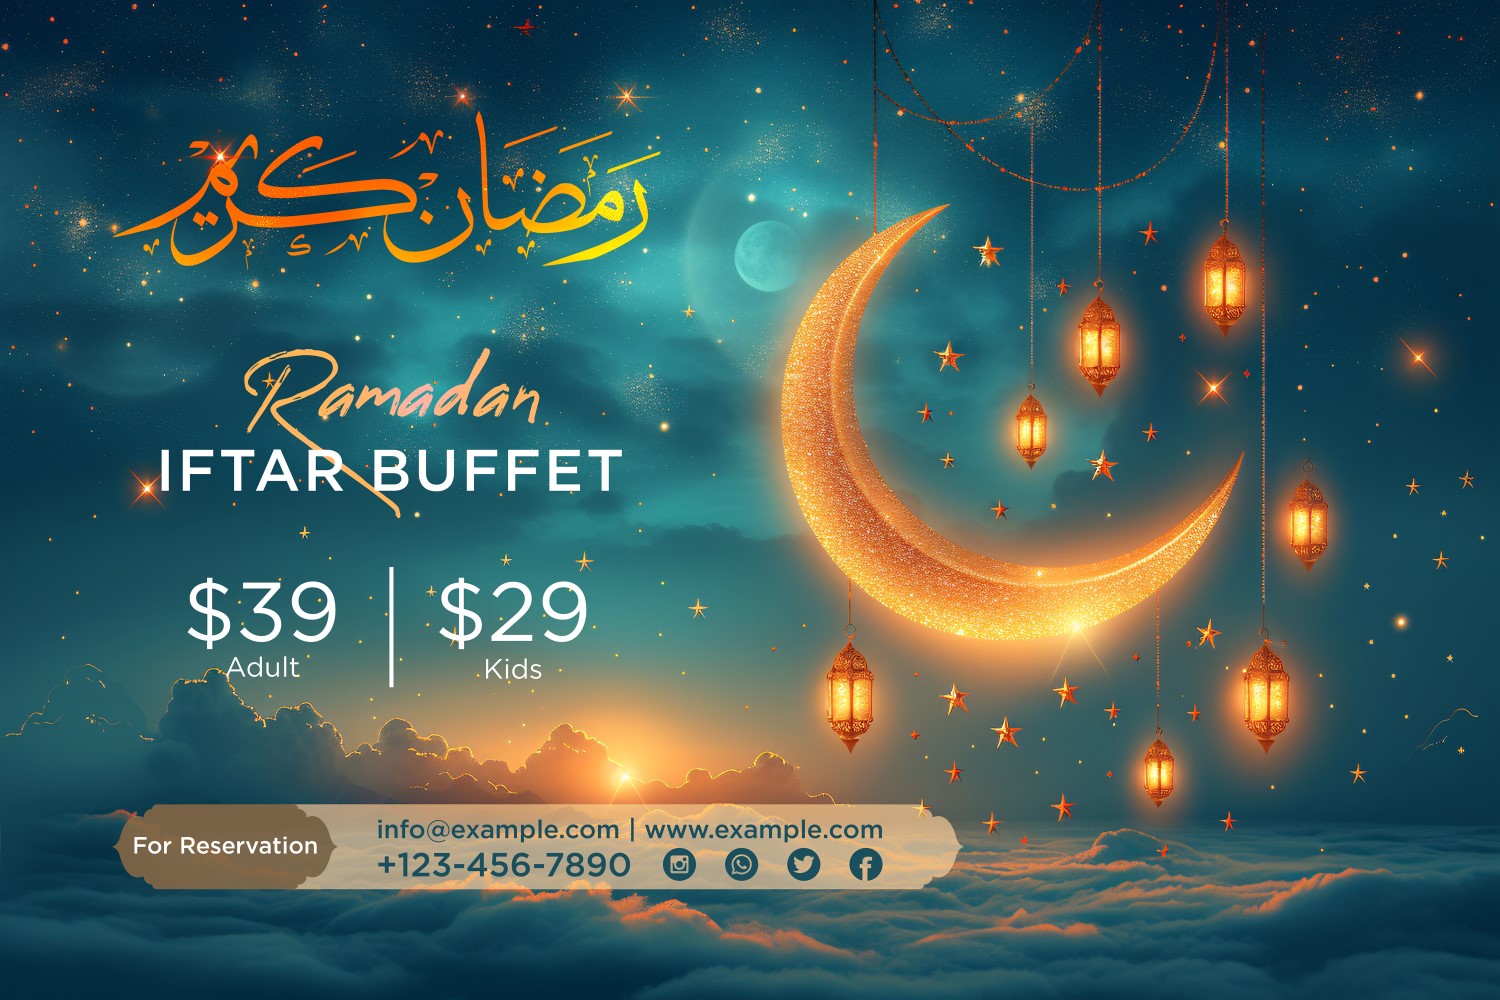 Ramadan Iftar Buffet Banner Design Template 59